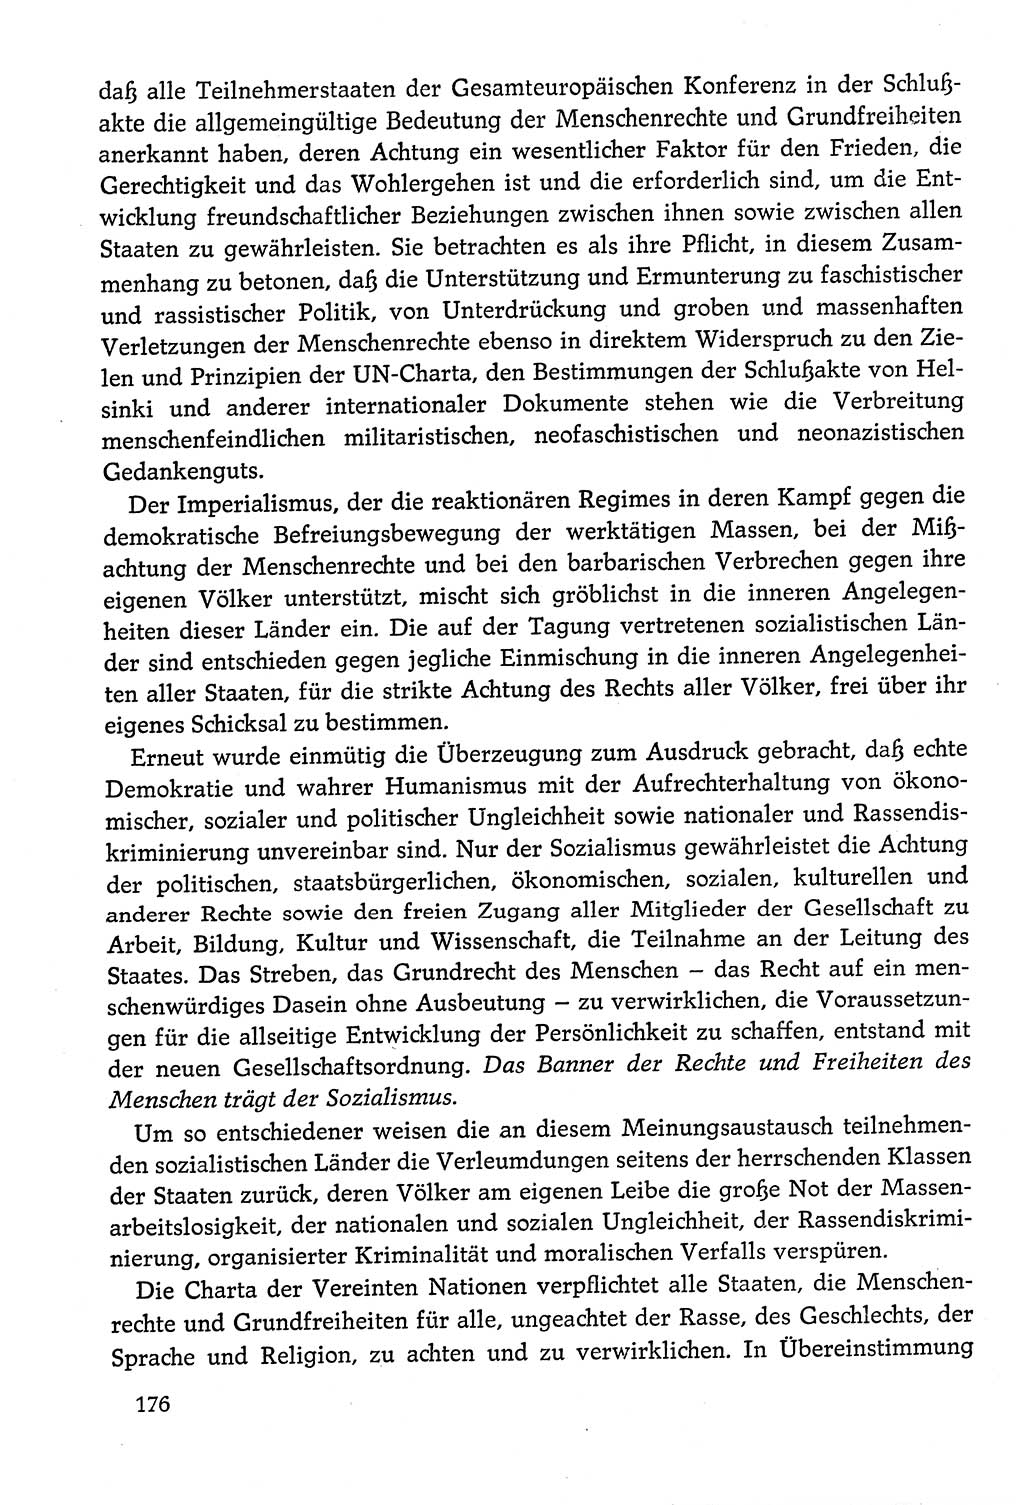 Dokumente der Sozialistischen Einheitspartei Deutschlands (SED) [Deutsche Demokratische Republik (DDR)] 1978-1979, Seite 176 (Dok. SED DDR 1978-1979, S. 176)